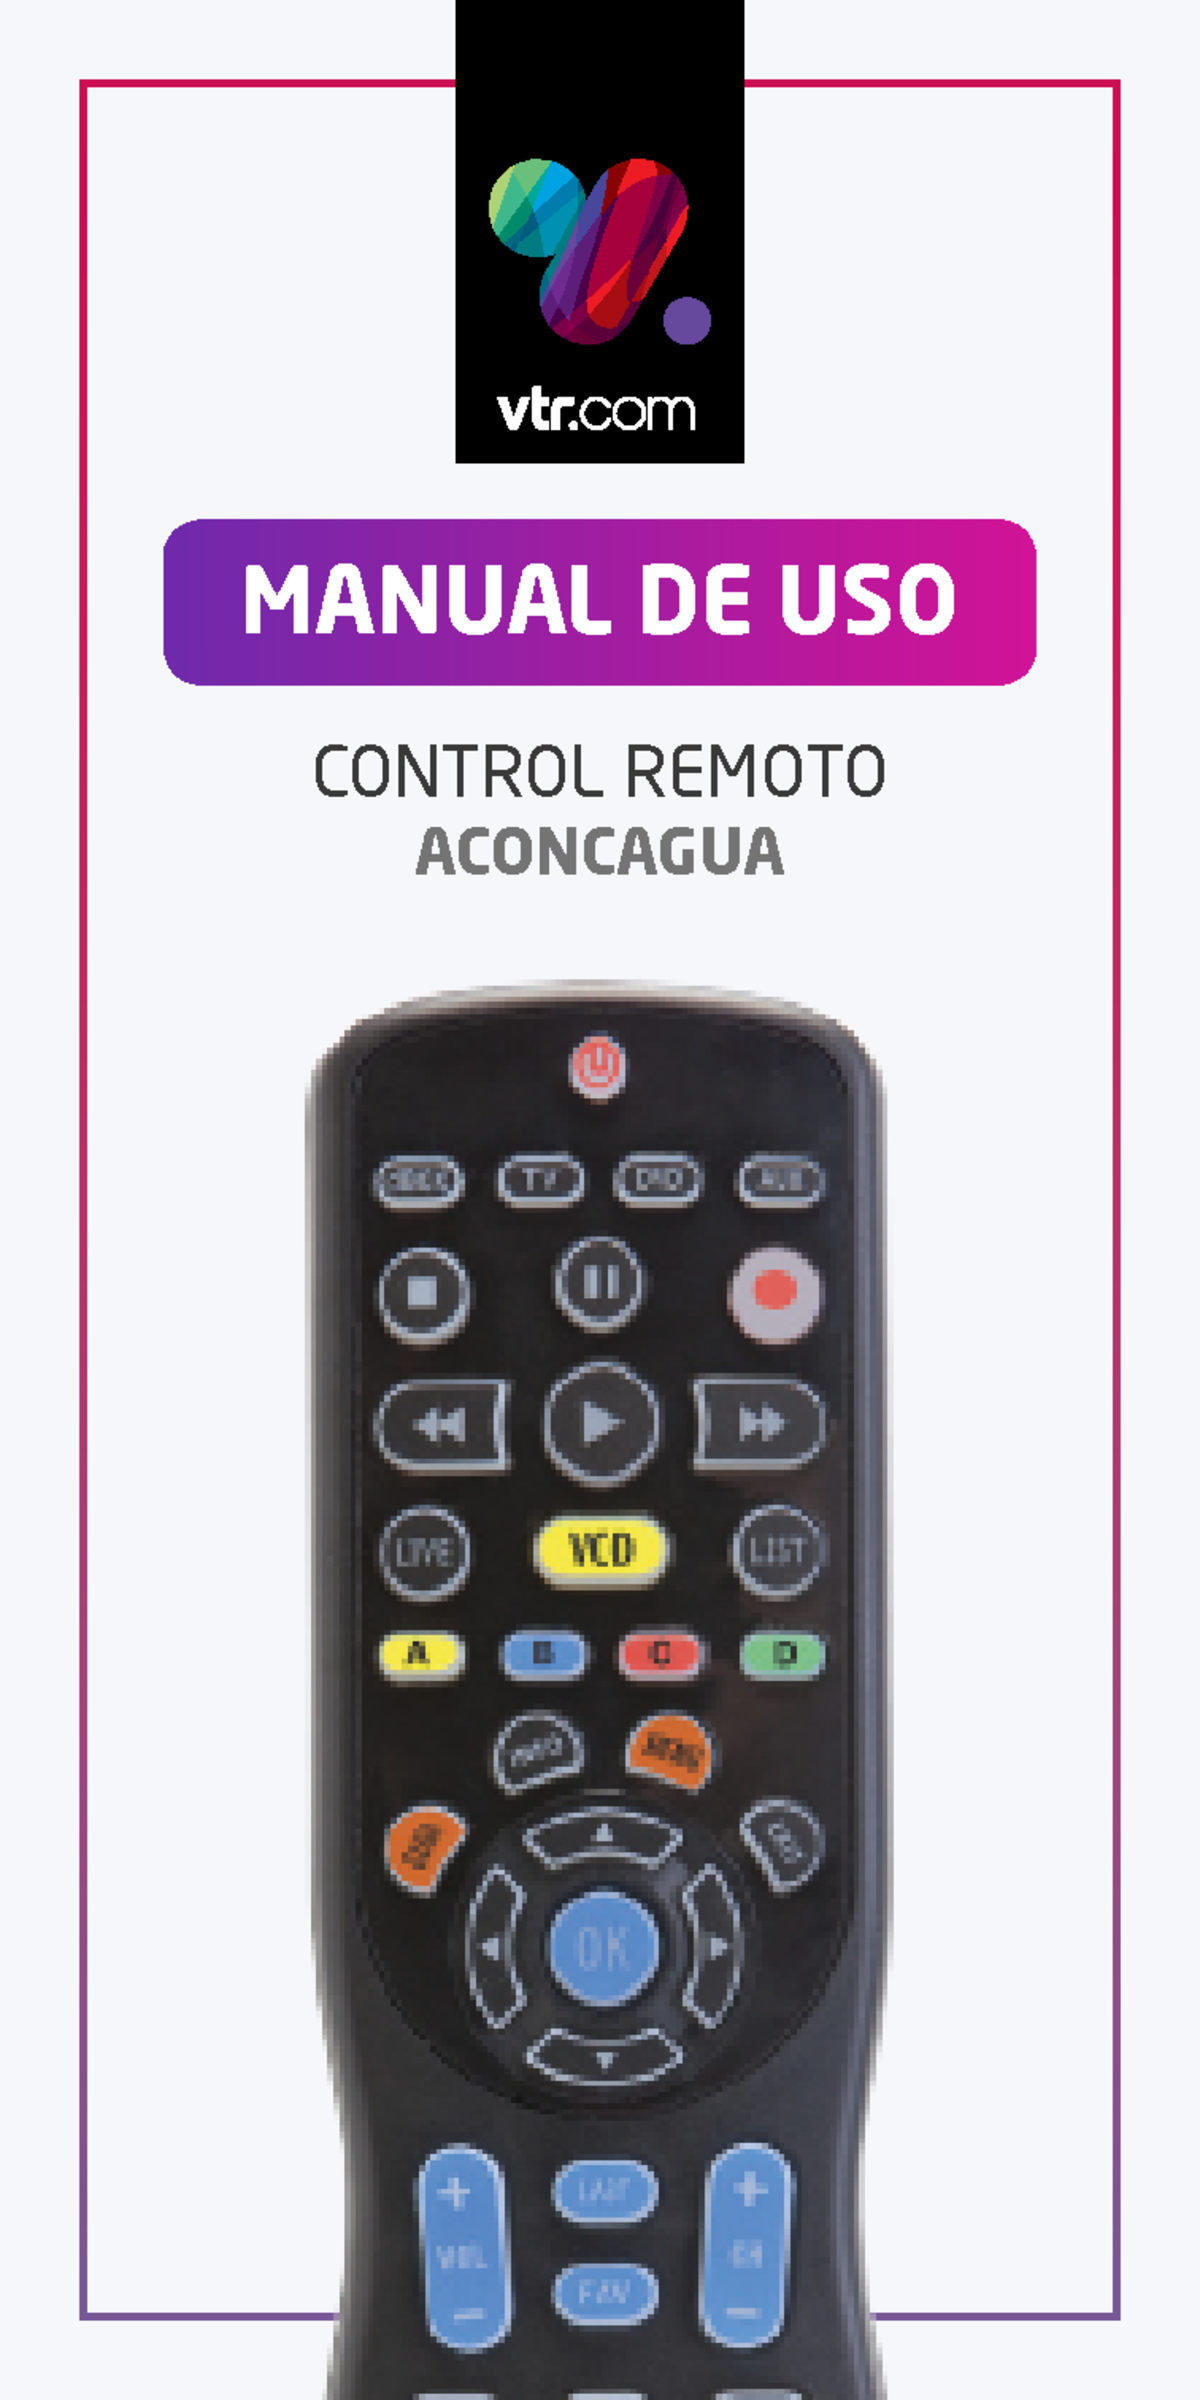 Manual instrucciones control remoto vtr - CONTROL REMOTO DE USO ACONCAGUA Prende Studocu